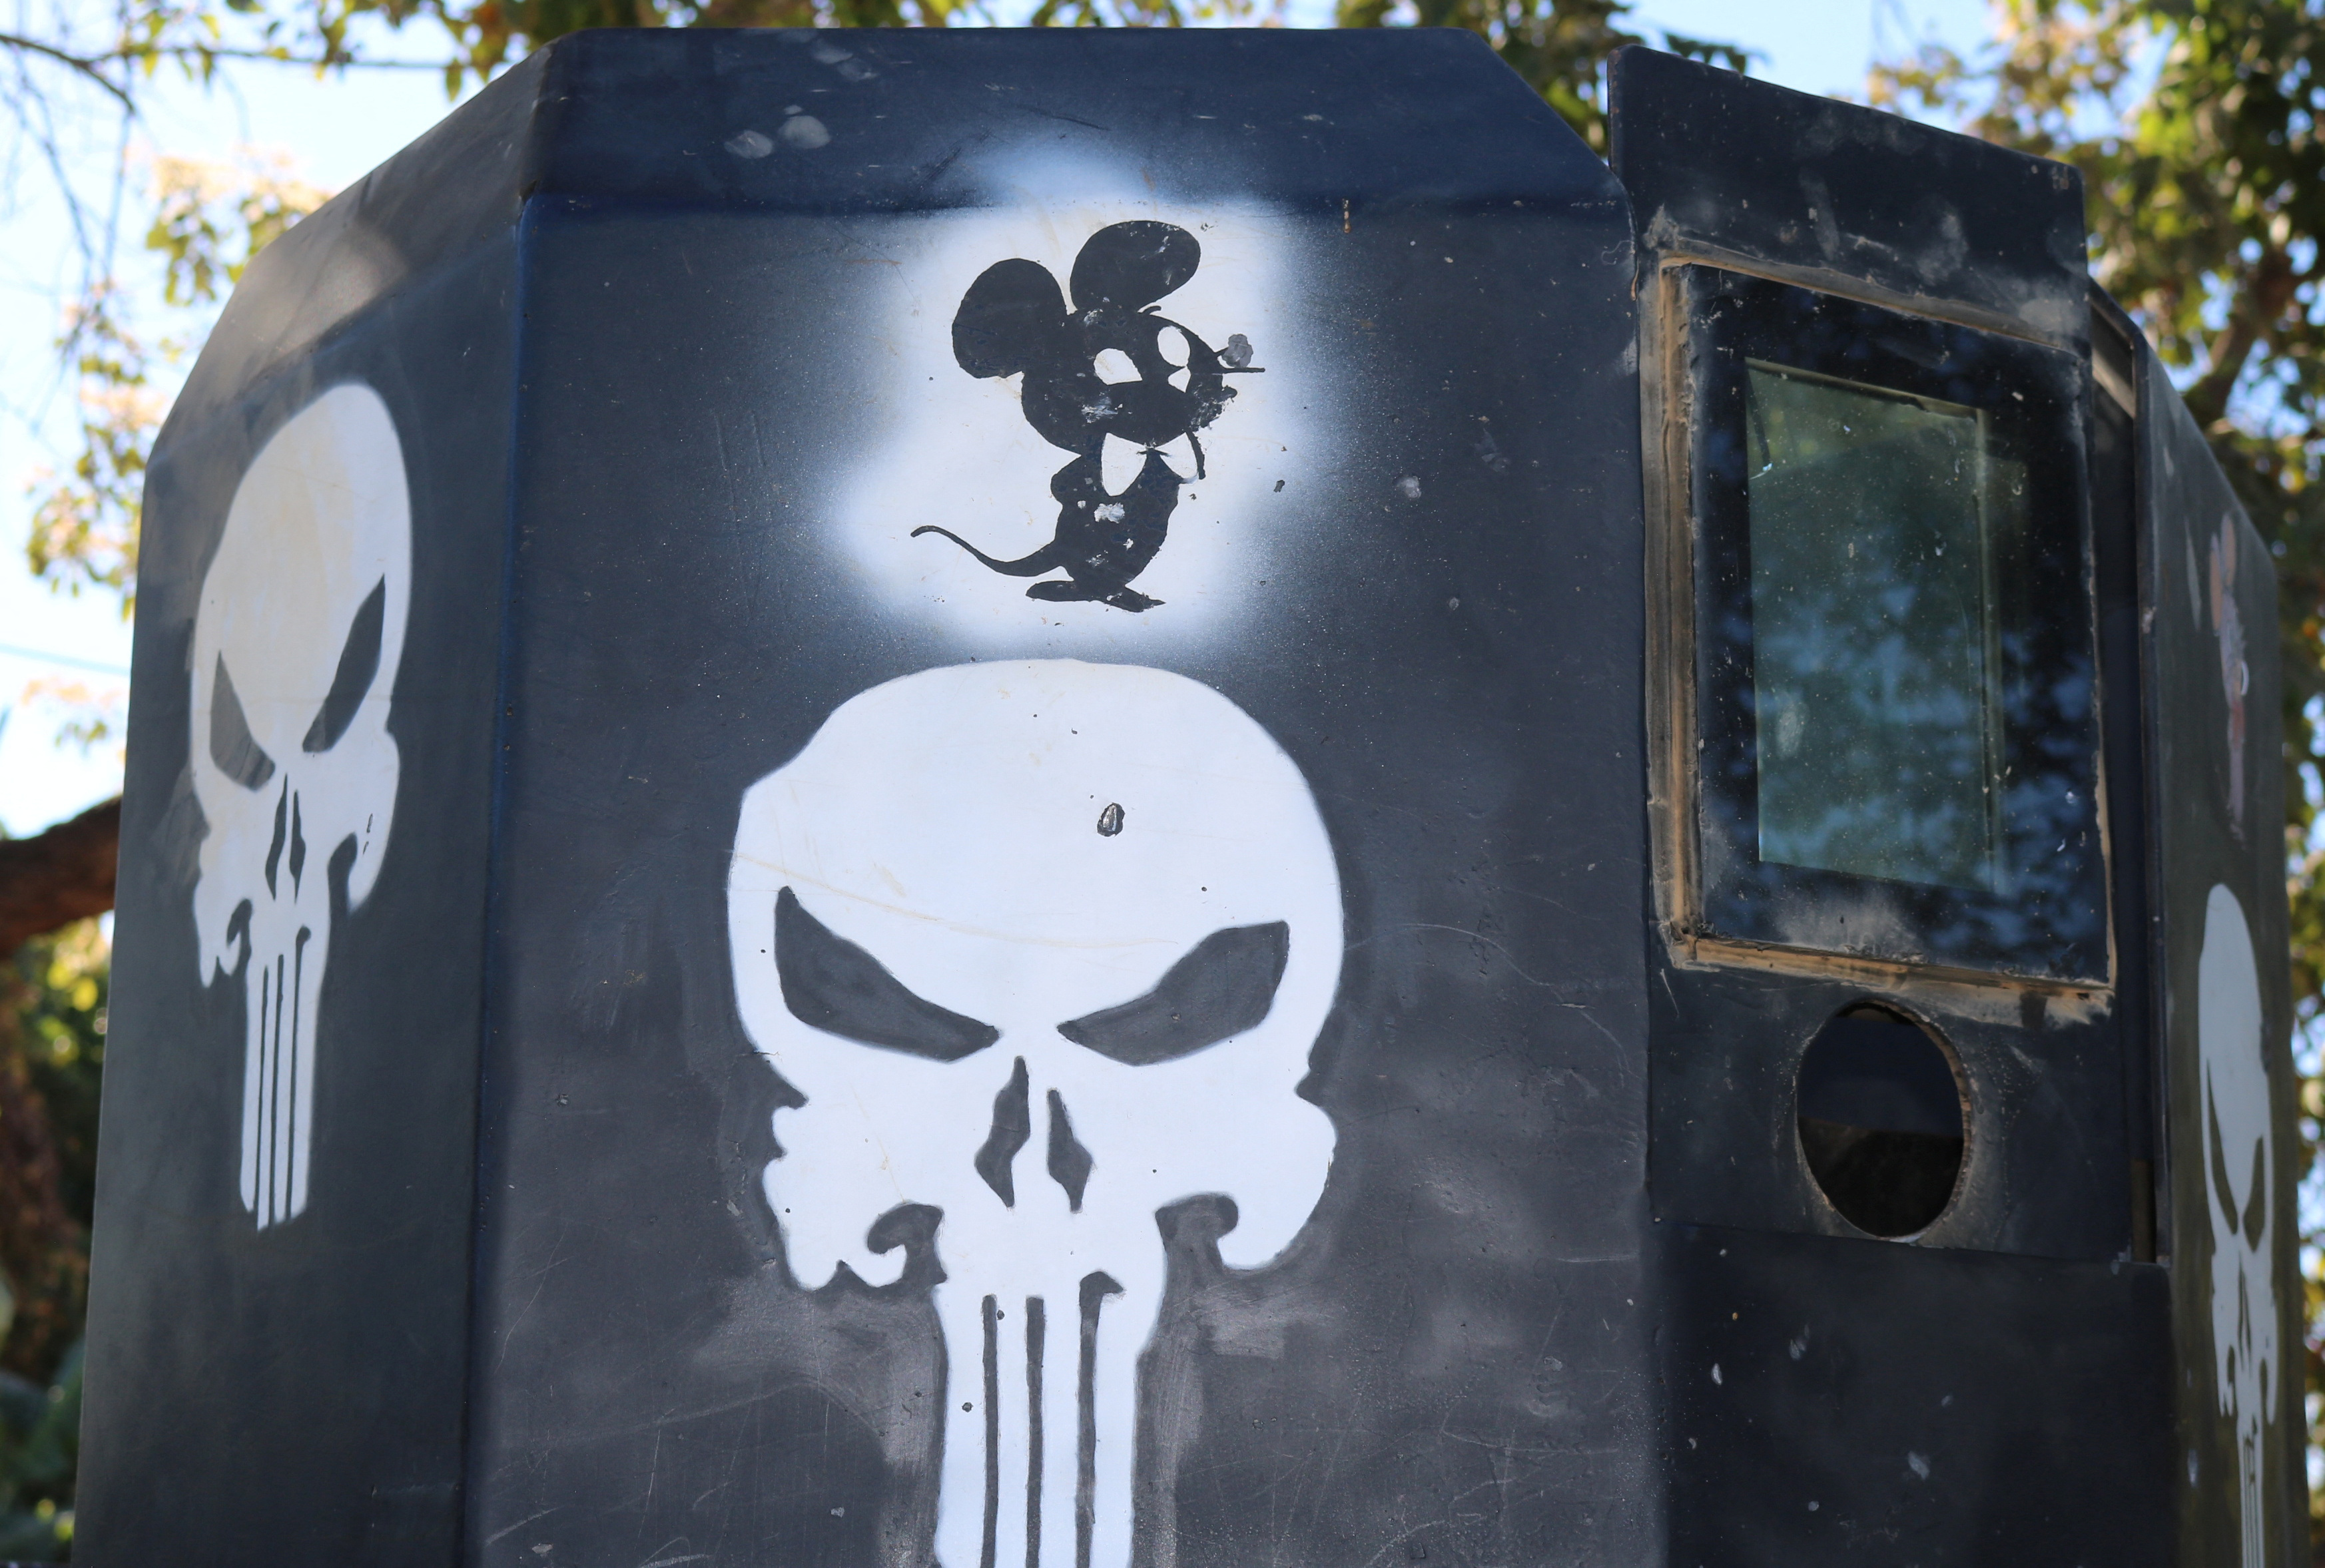 Uno de los vehículos blindados que participaron en la refriega del pasado 5 de enero tenía el logo de un ratón, alusivo al hijo del Chapo (REUTERS/Stringer)